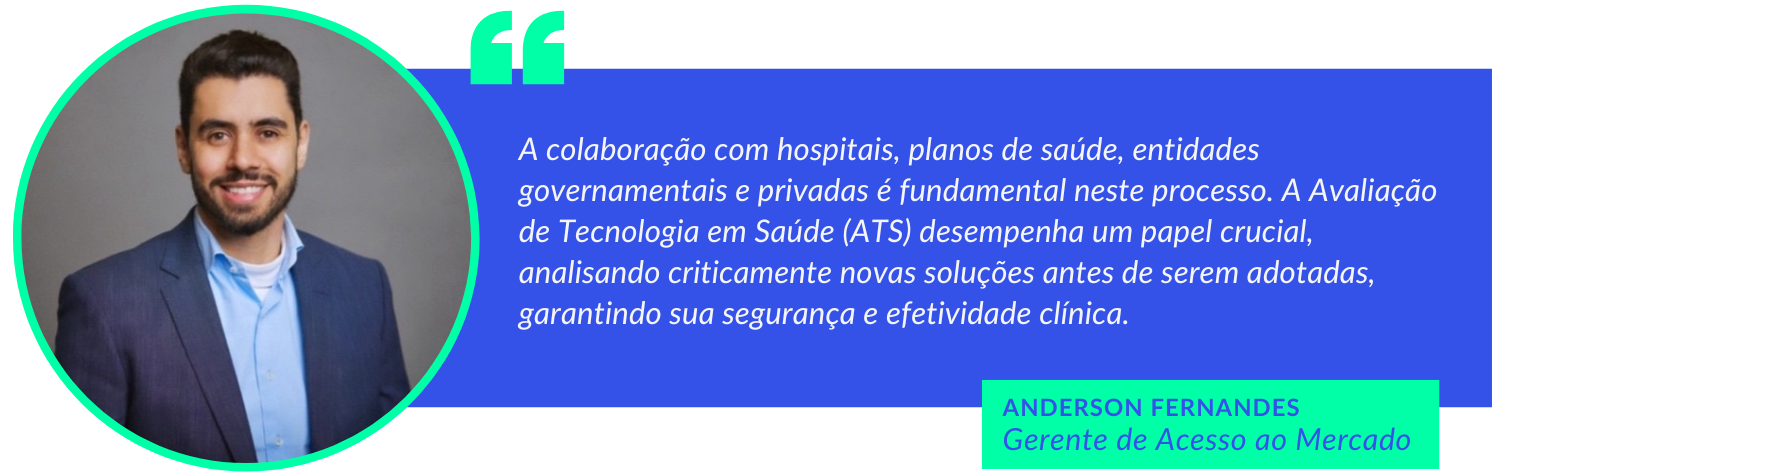 Aspas Anderson Fernandes - Tecnologias no sistema de saúde